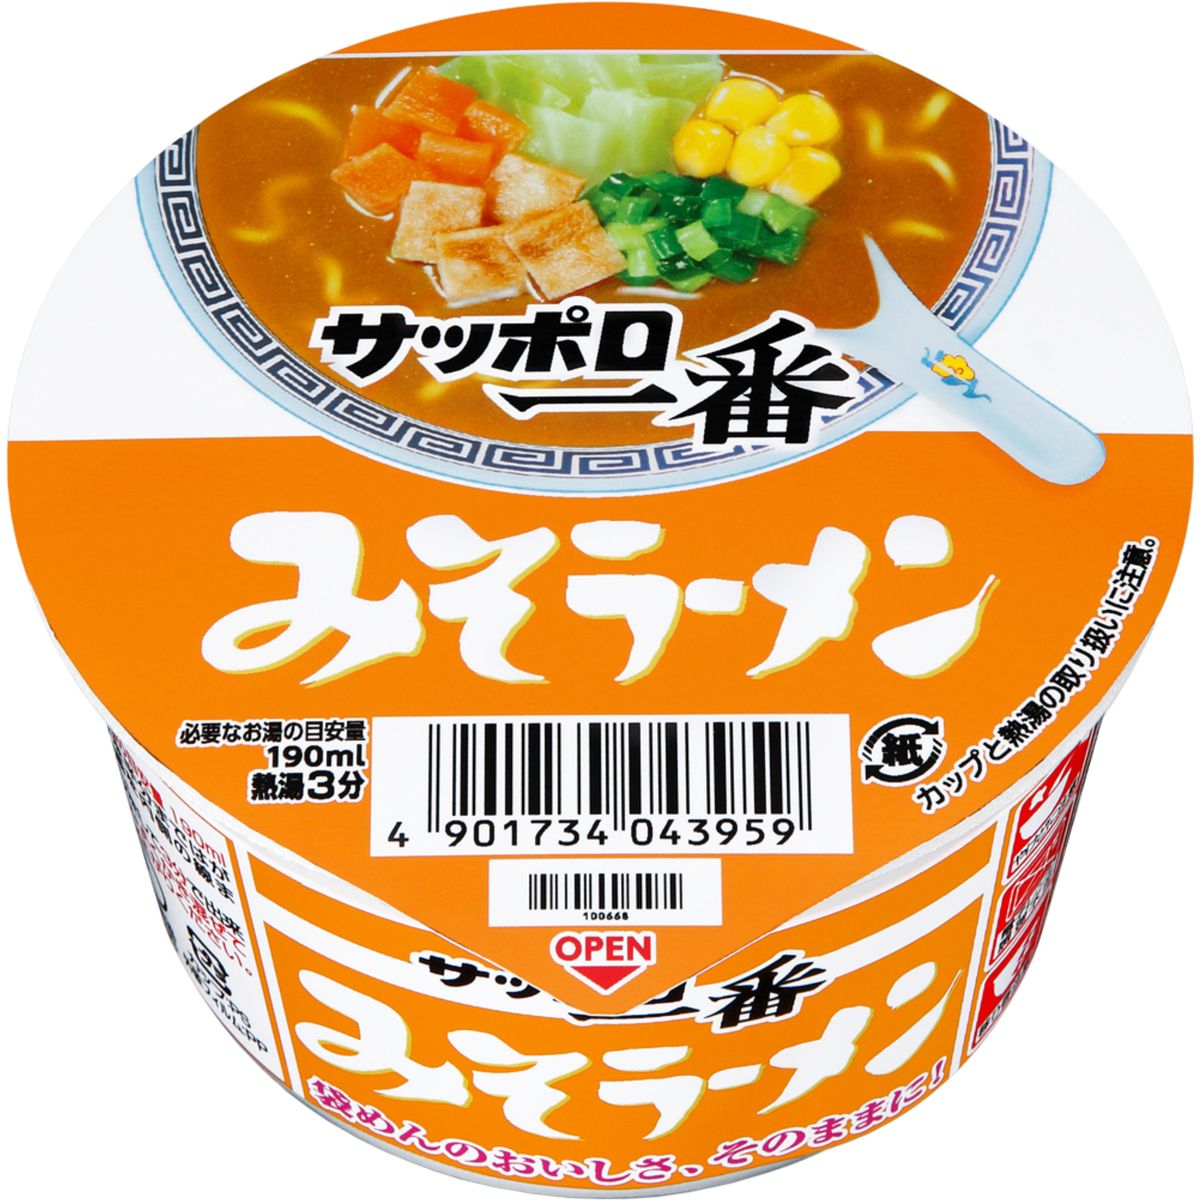 【12個入リ】サンヨー食品 サッポロ一番 ミソラーメン ミニドンブリ 46g